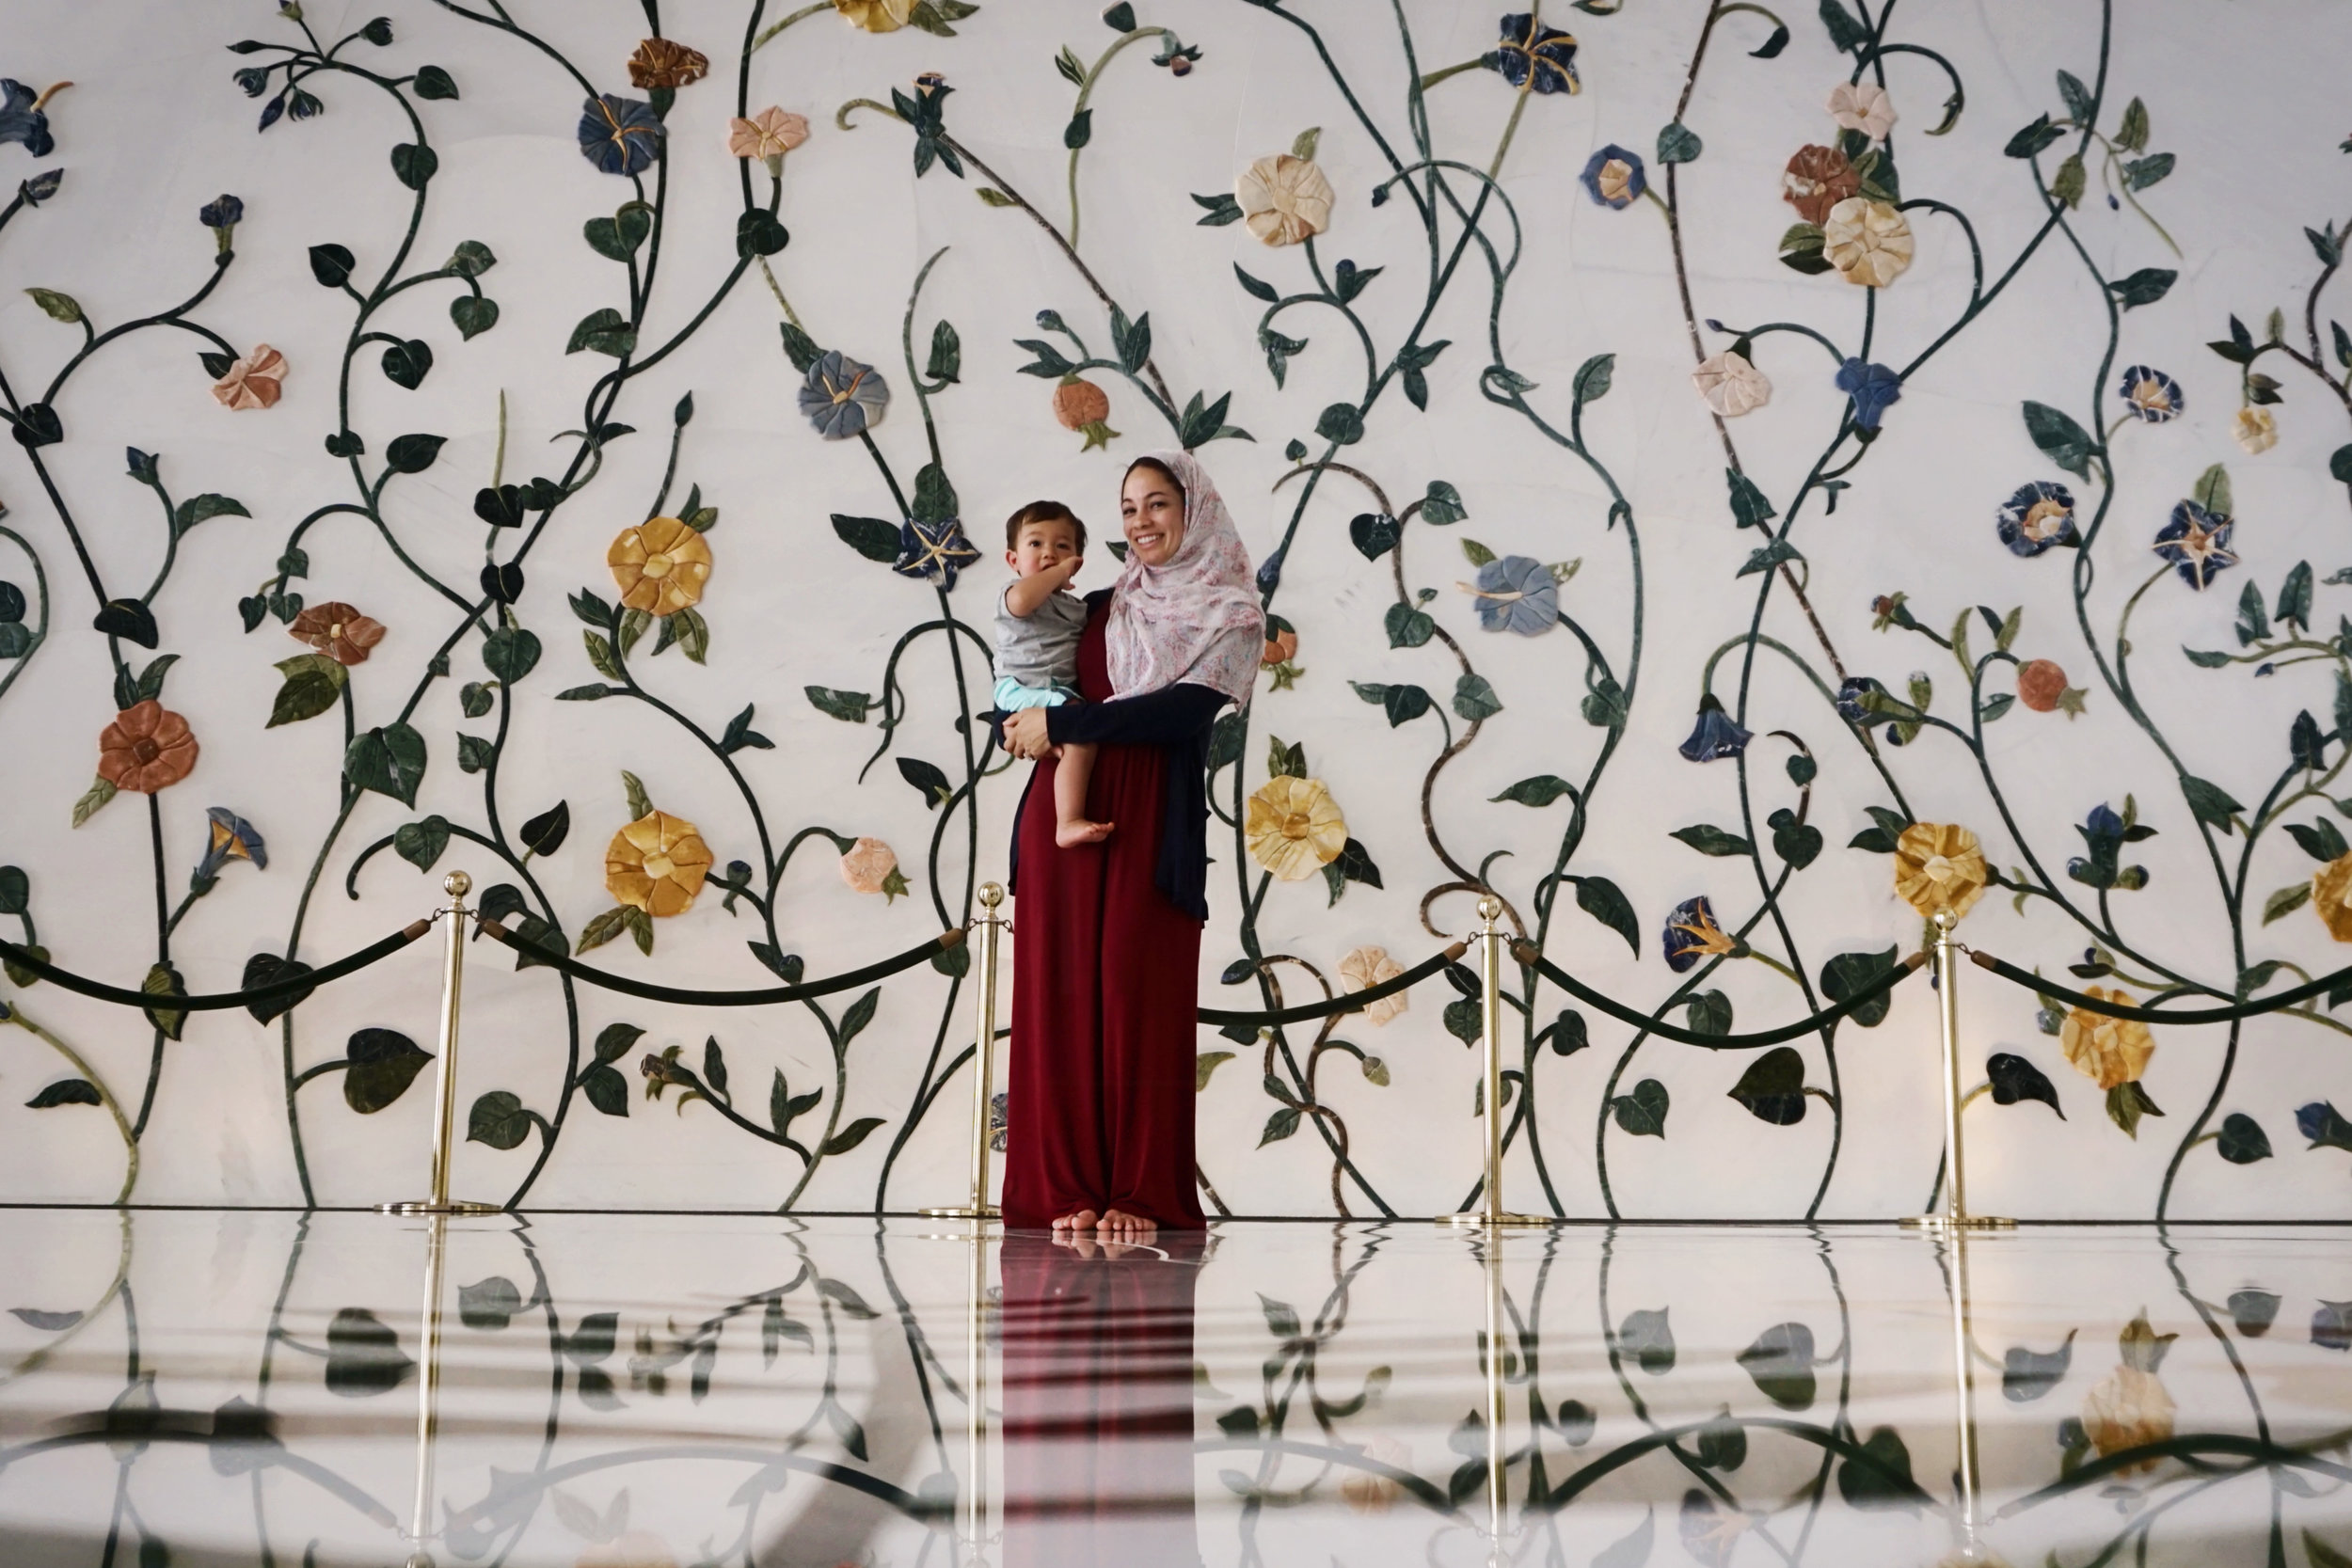 UAE_Abu Dhabi_Sheikh Zayed Mosque_inside floral wall_mom baby.jpg